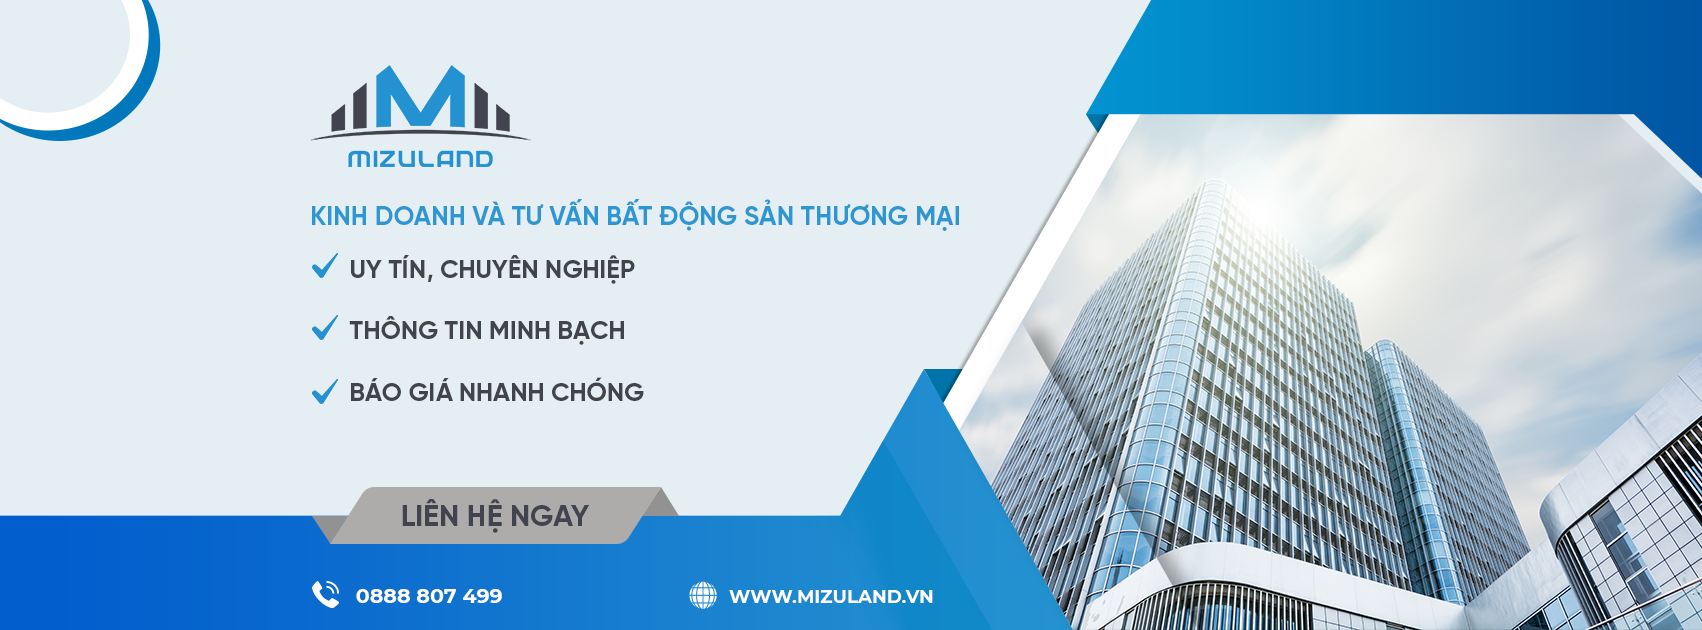 Mizuland.vn - Kinh doanh và tư vấn Bất động sản thương mại Đà Nẵng